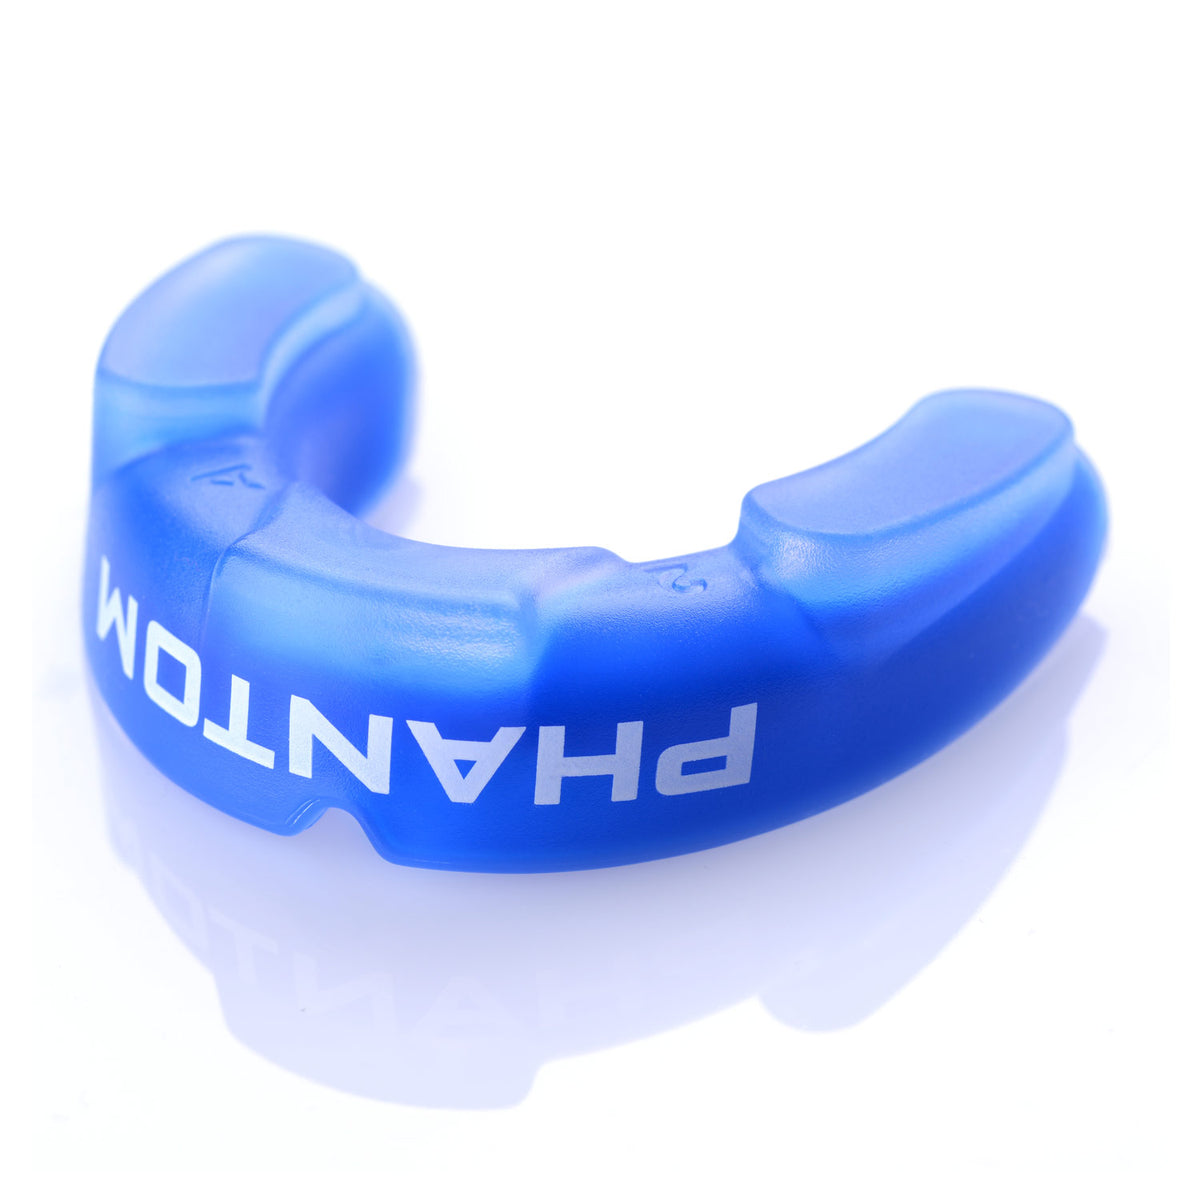 Phantom Impact Zahnschutz in Blau für Kampfsport in der Unteransicht mit den Shock Pads für die Backenzähne